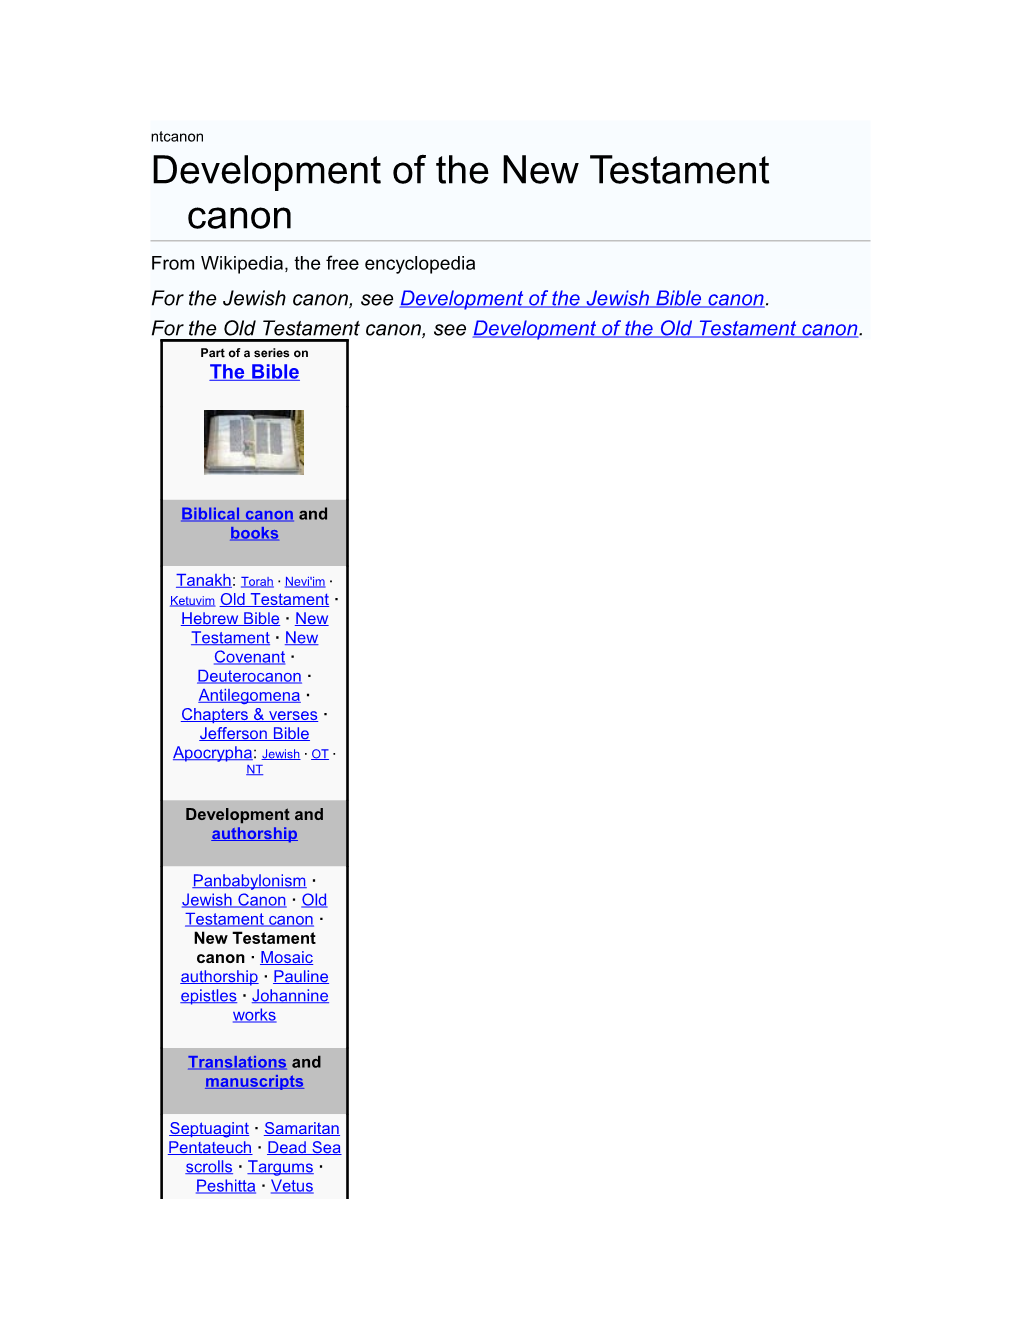 Development of the New Testament Canon